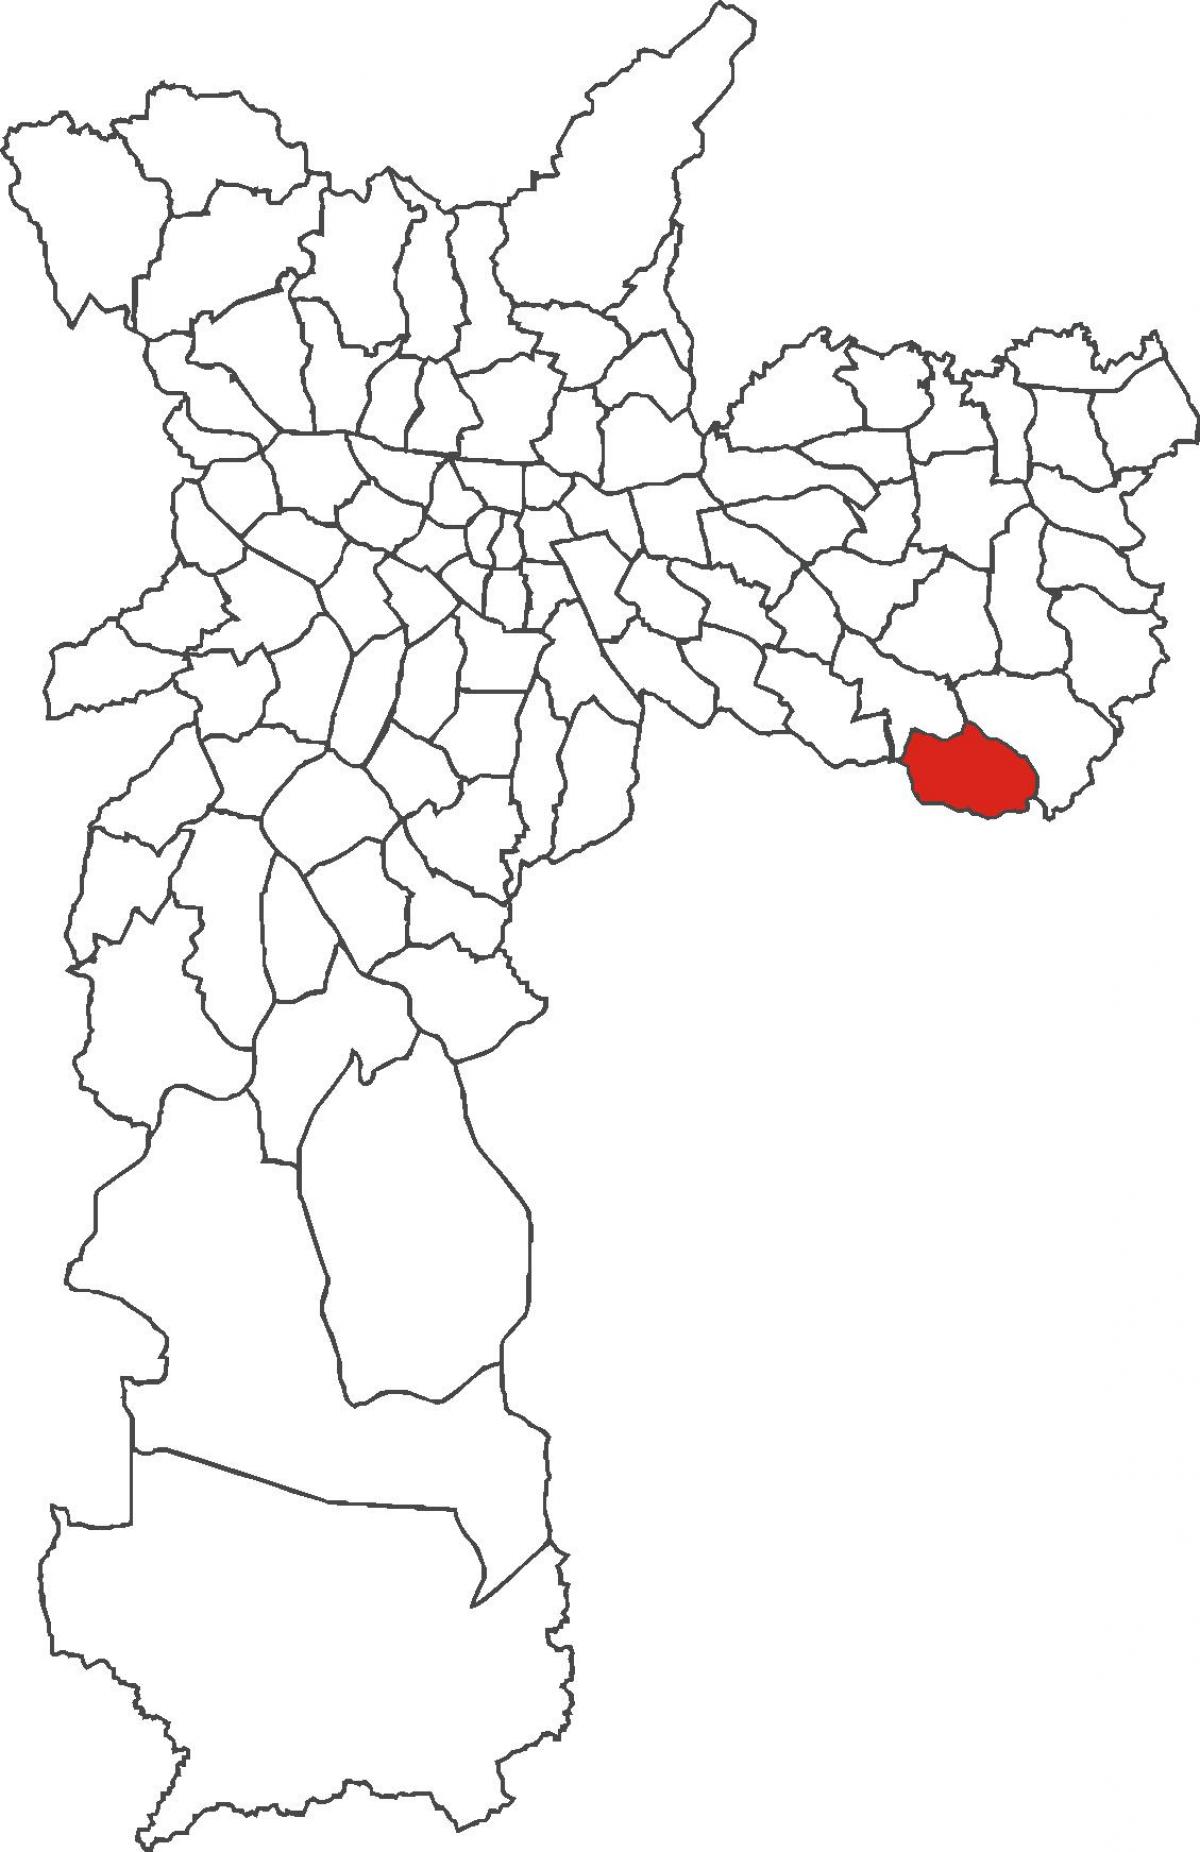 מפה של סאו רפאל מחוז